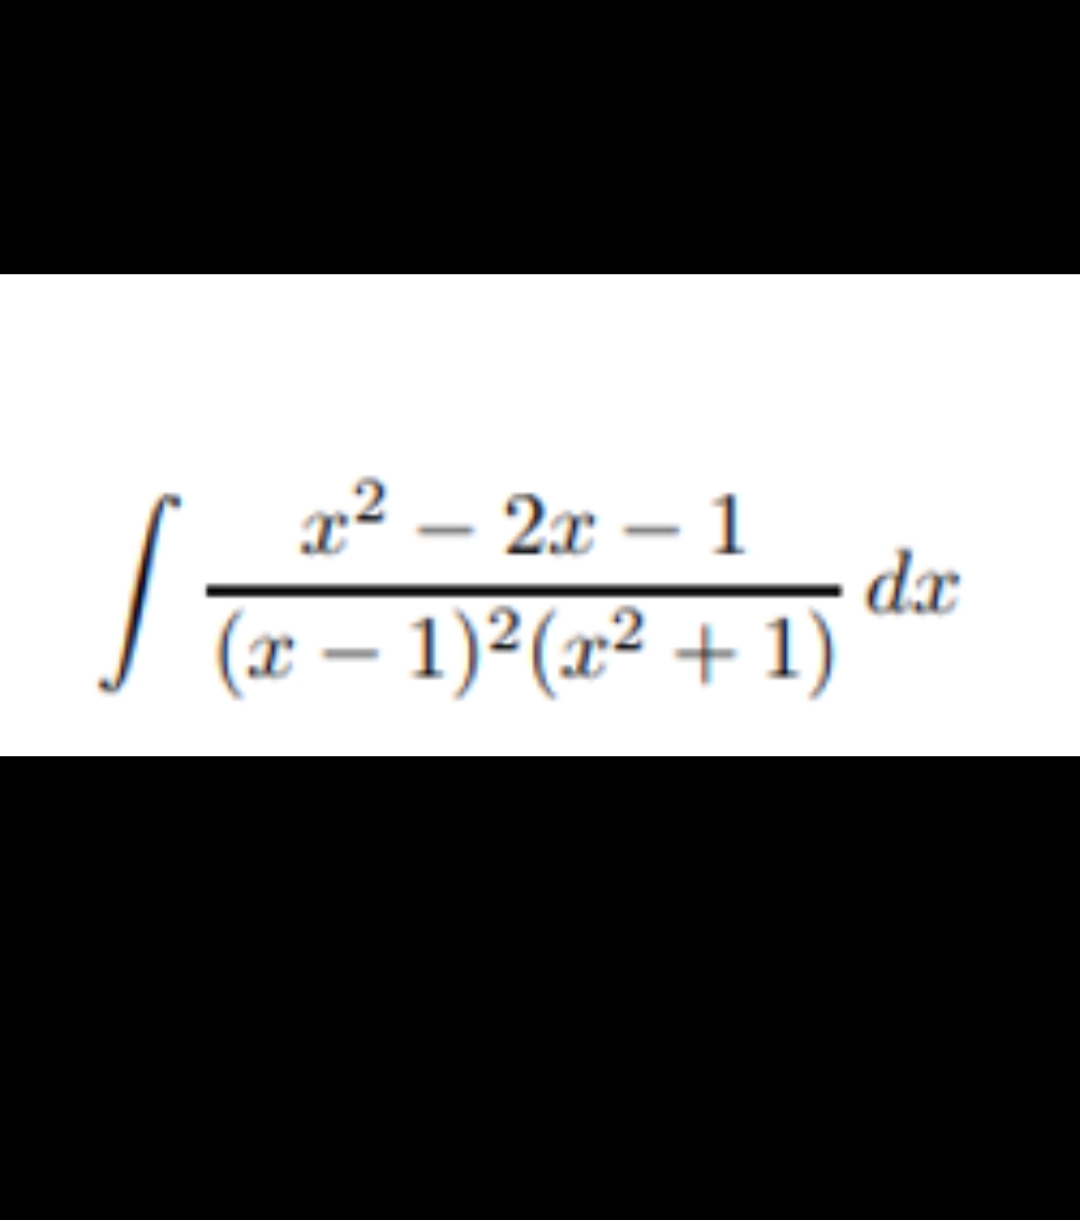 x² – 2x – 1
dx
J (x – 1)²(x² + 1)
